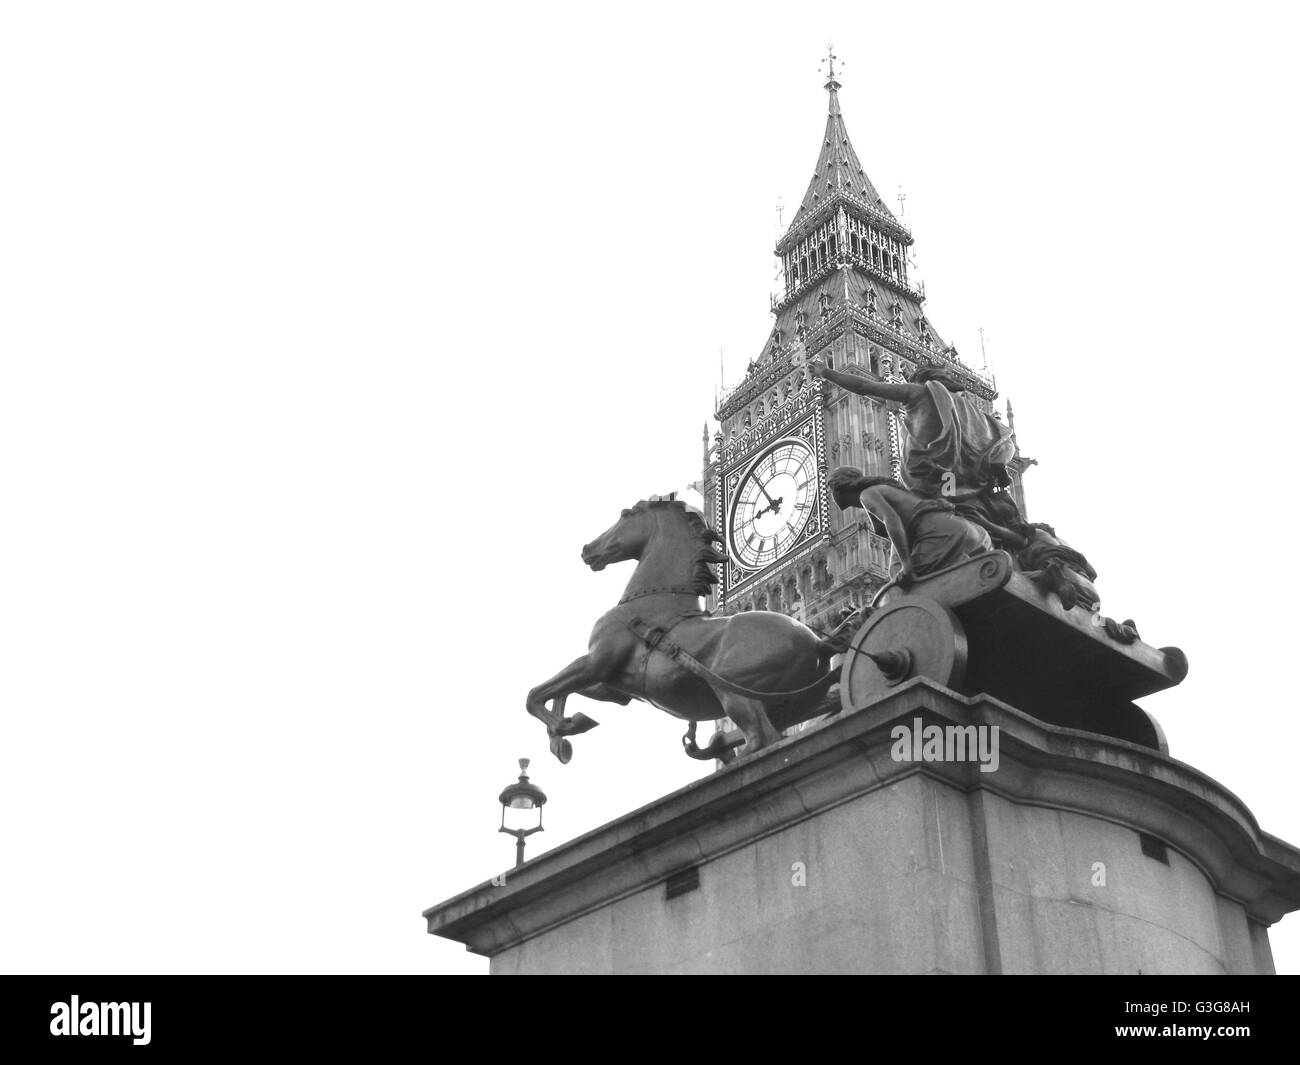 Statue de Boudicca près de Westminster Bridge, London, UK Banque D'Images